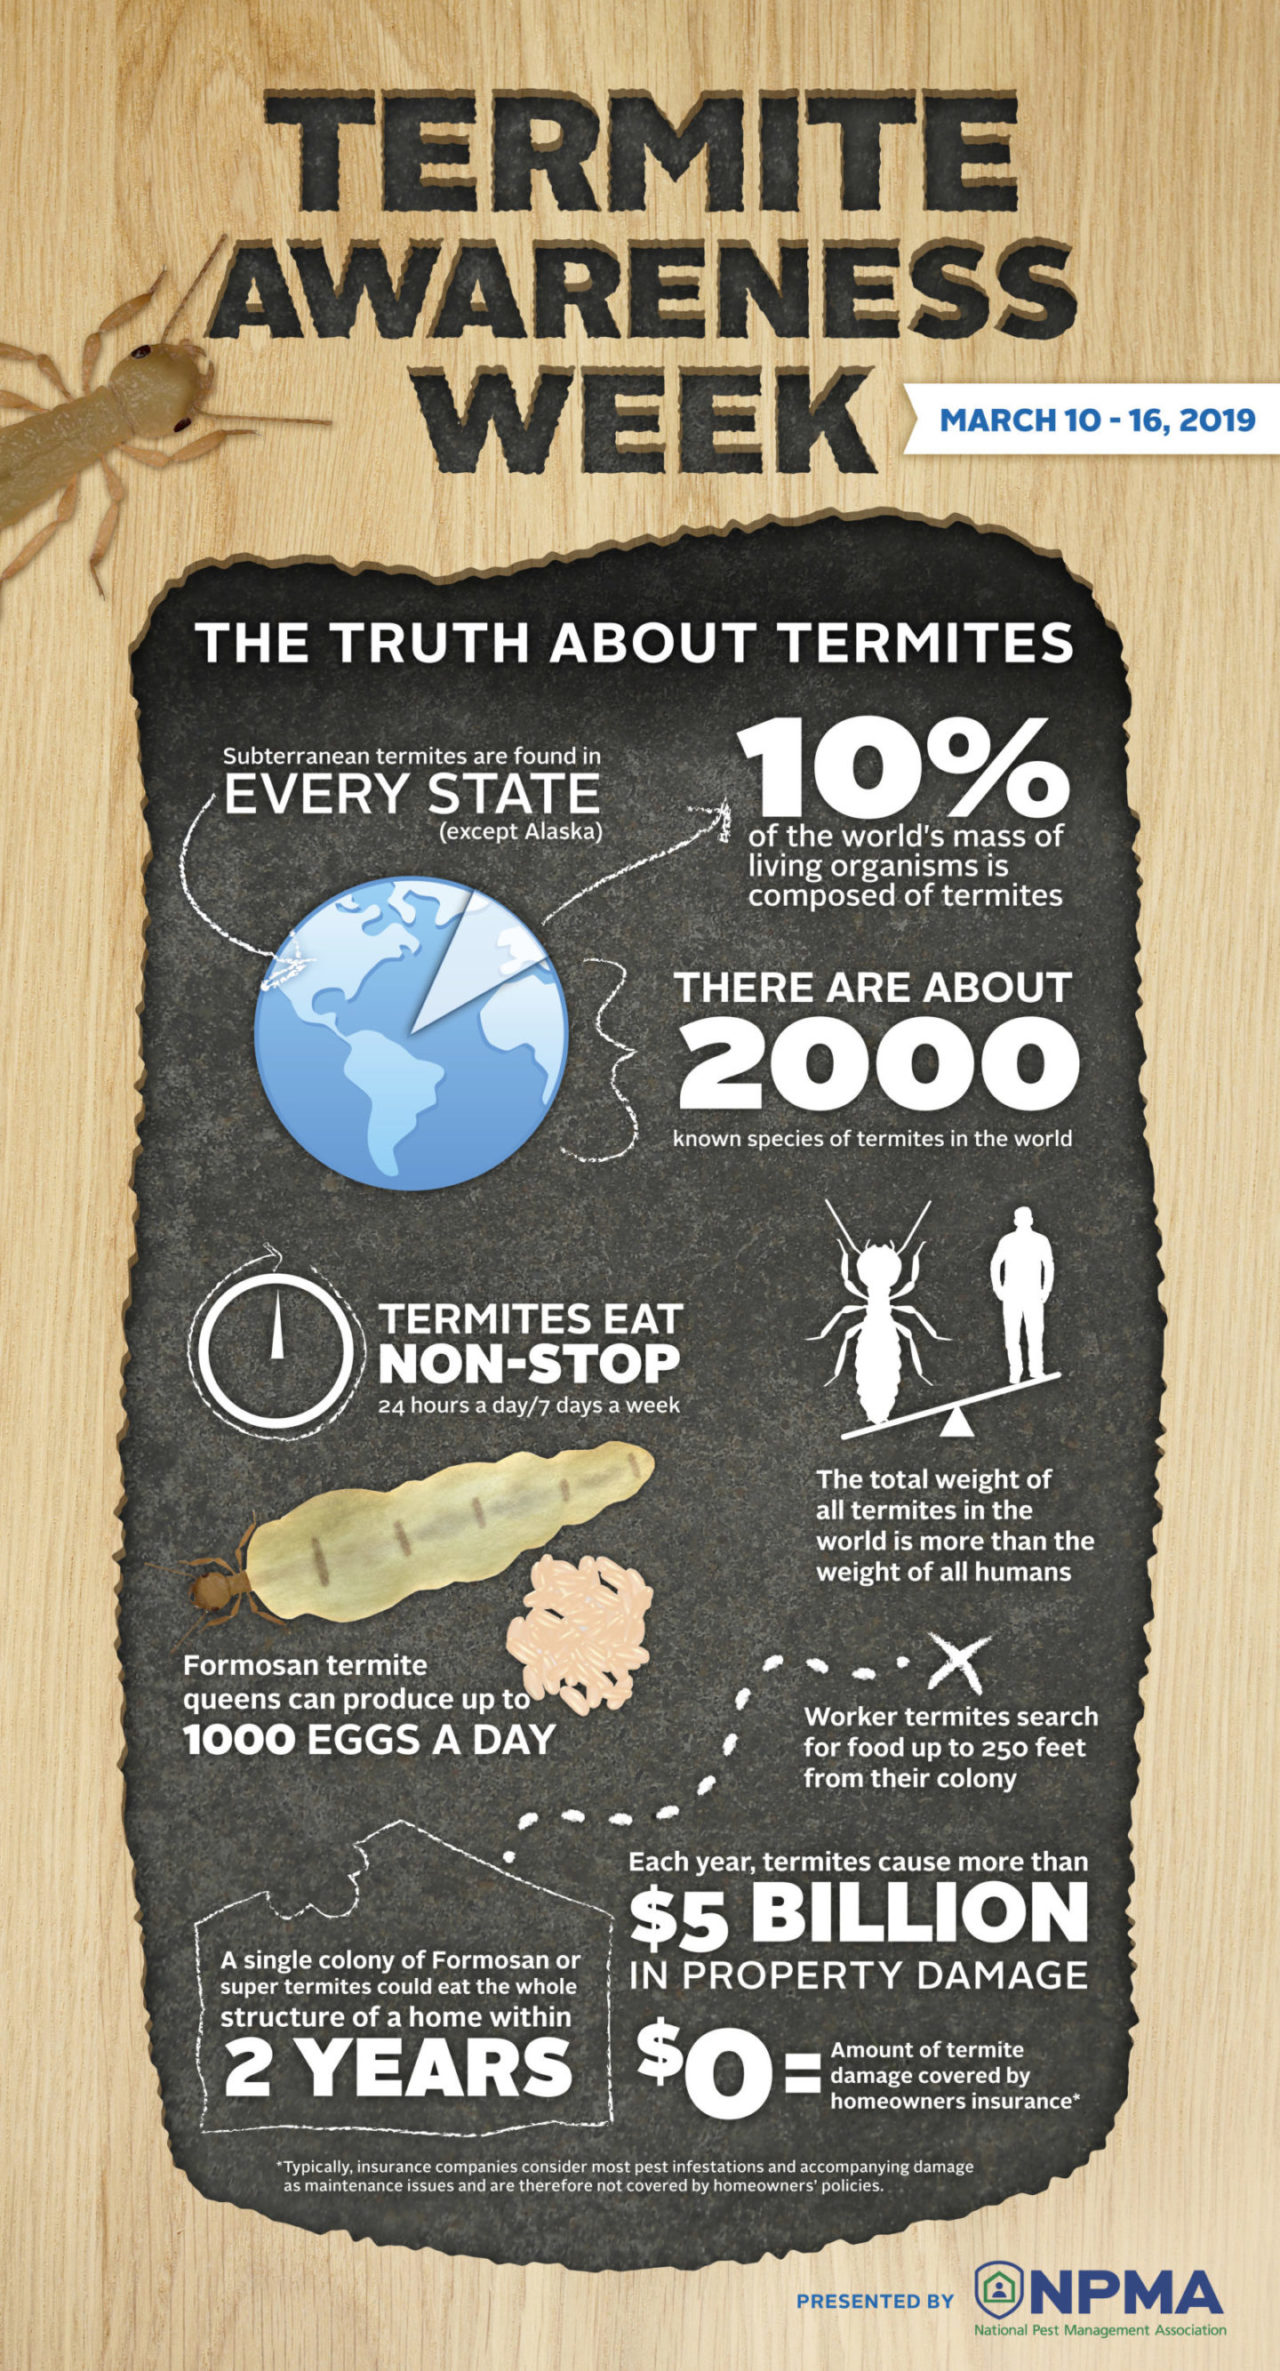 rose termite awareness week